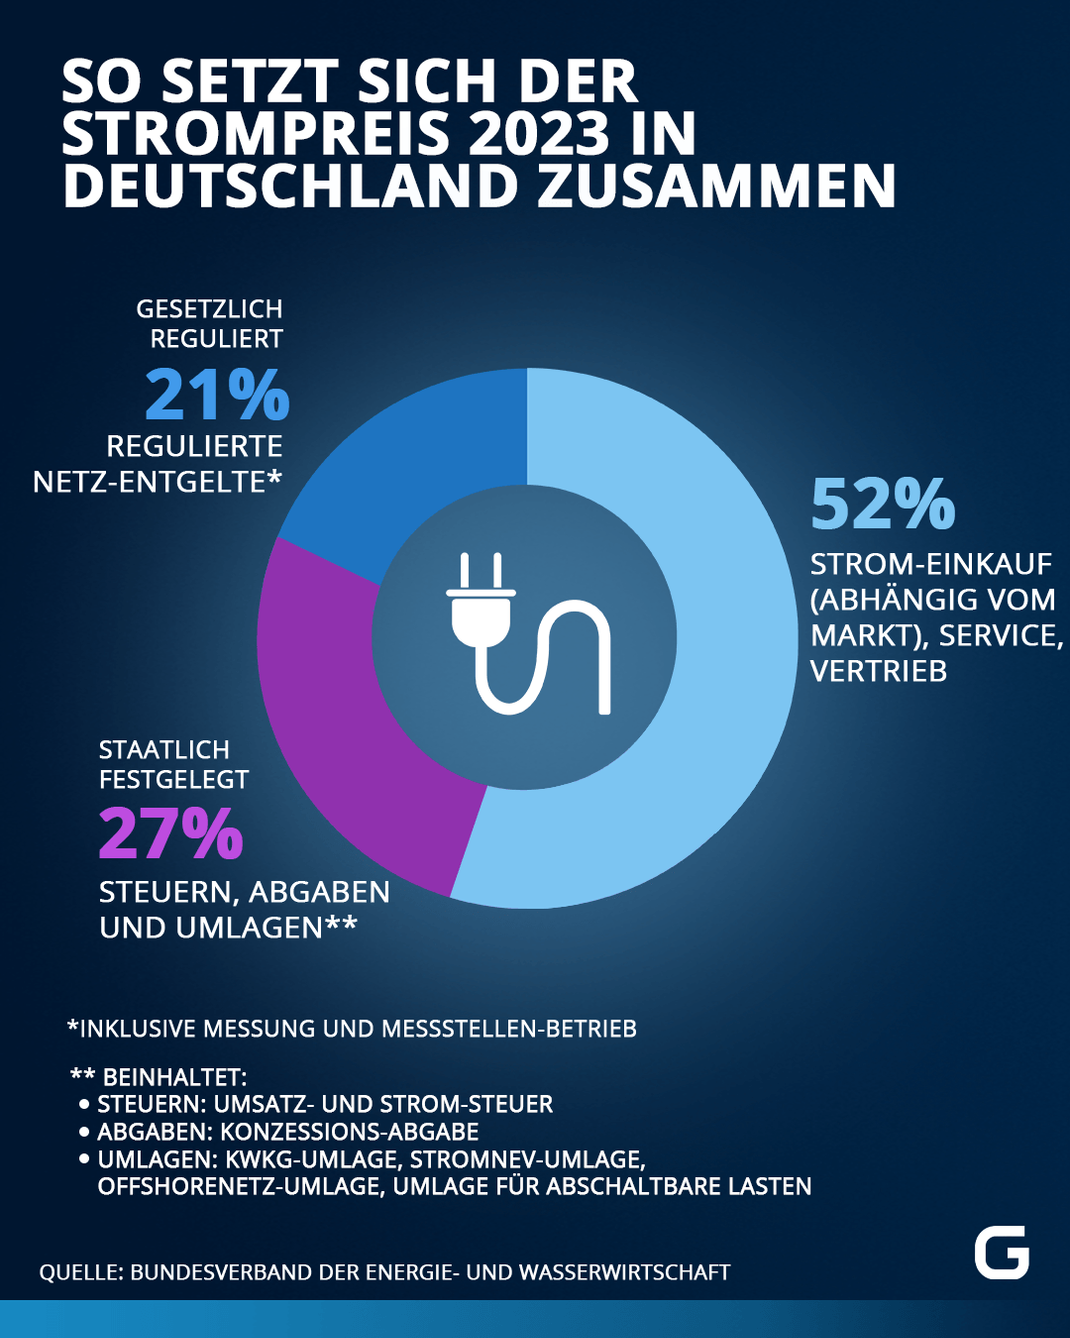 So setzt sich der Strompreis 2023 in Deutschland zusammen: 21 Prozent ist gesetzlich reguliert, 52 Prozent Strom-Einkauf, 27 Prozent Steuern, Abgaben und Umlagen.